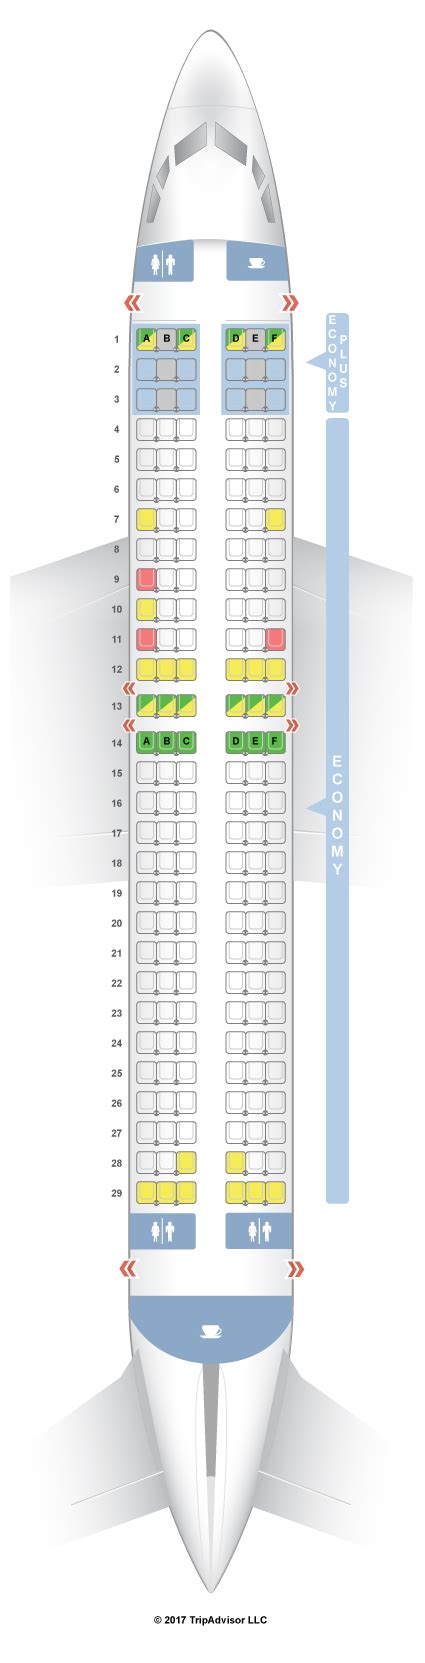 boeing 737 seating chart westjet